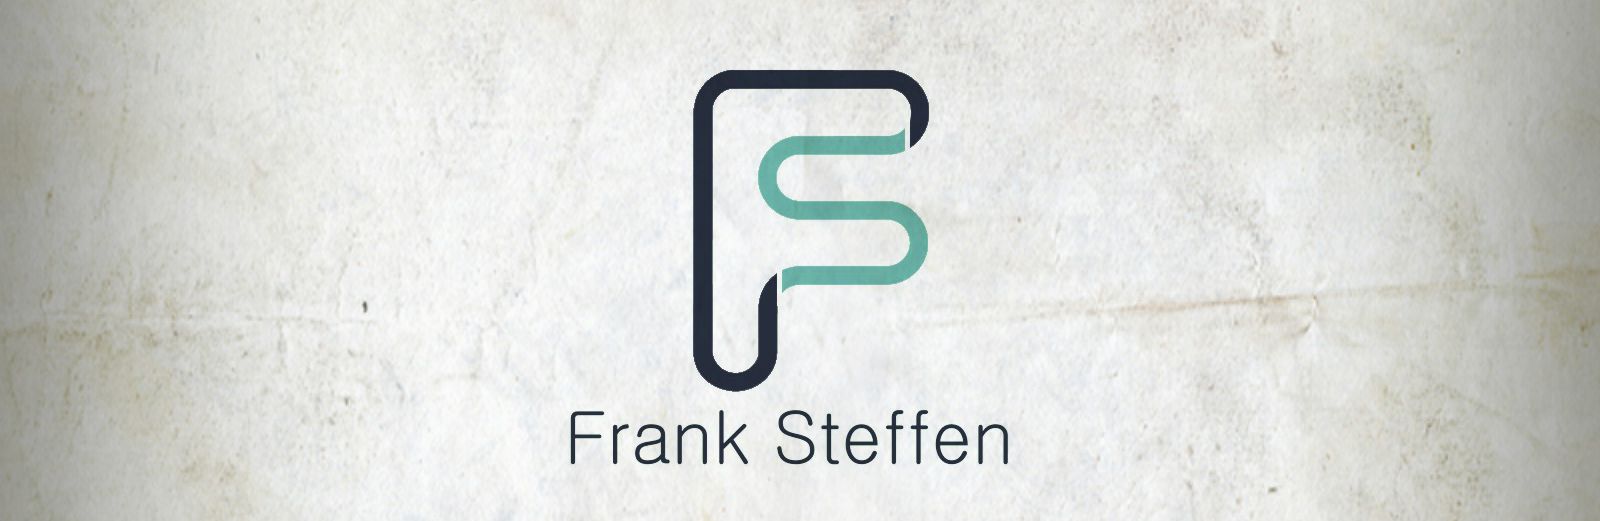 FS - Frank Steffen Logo